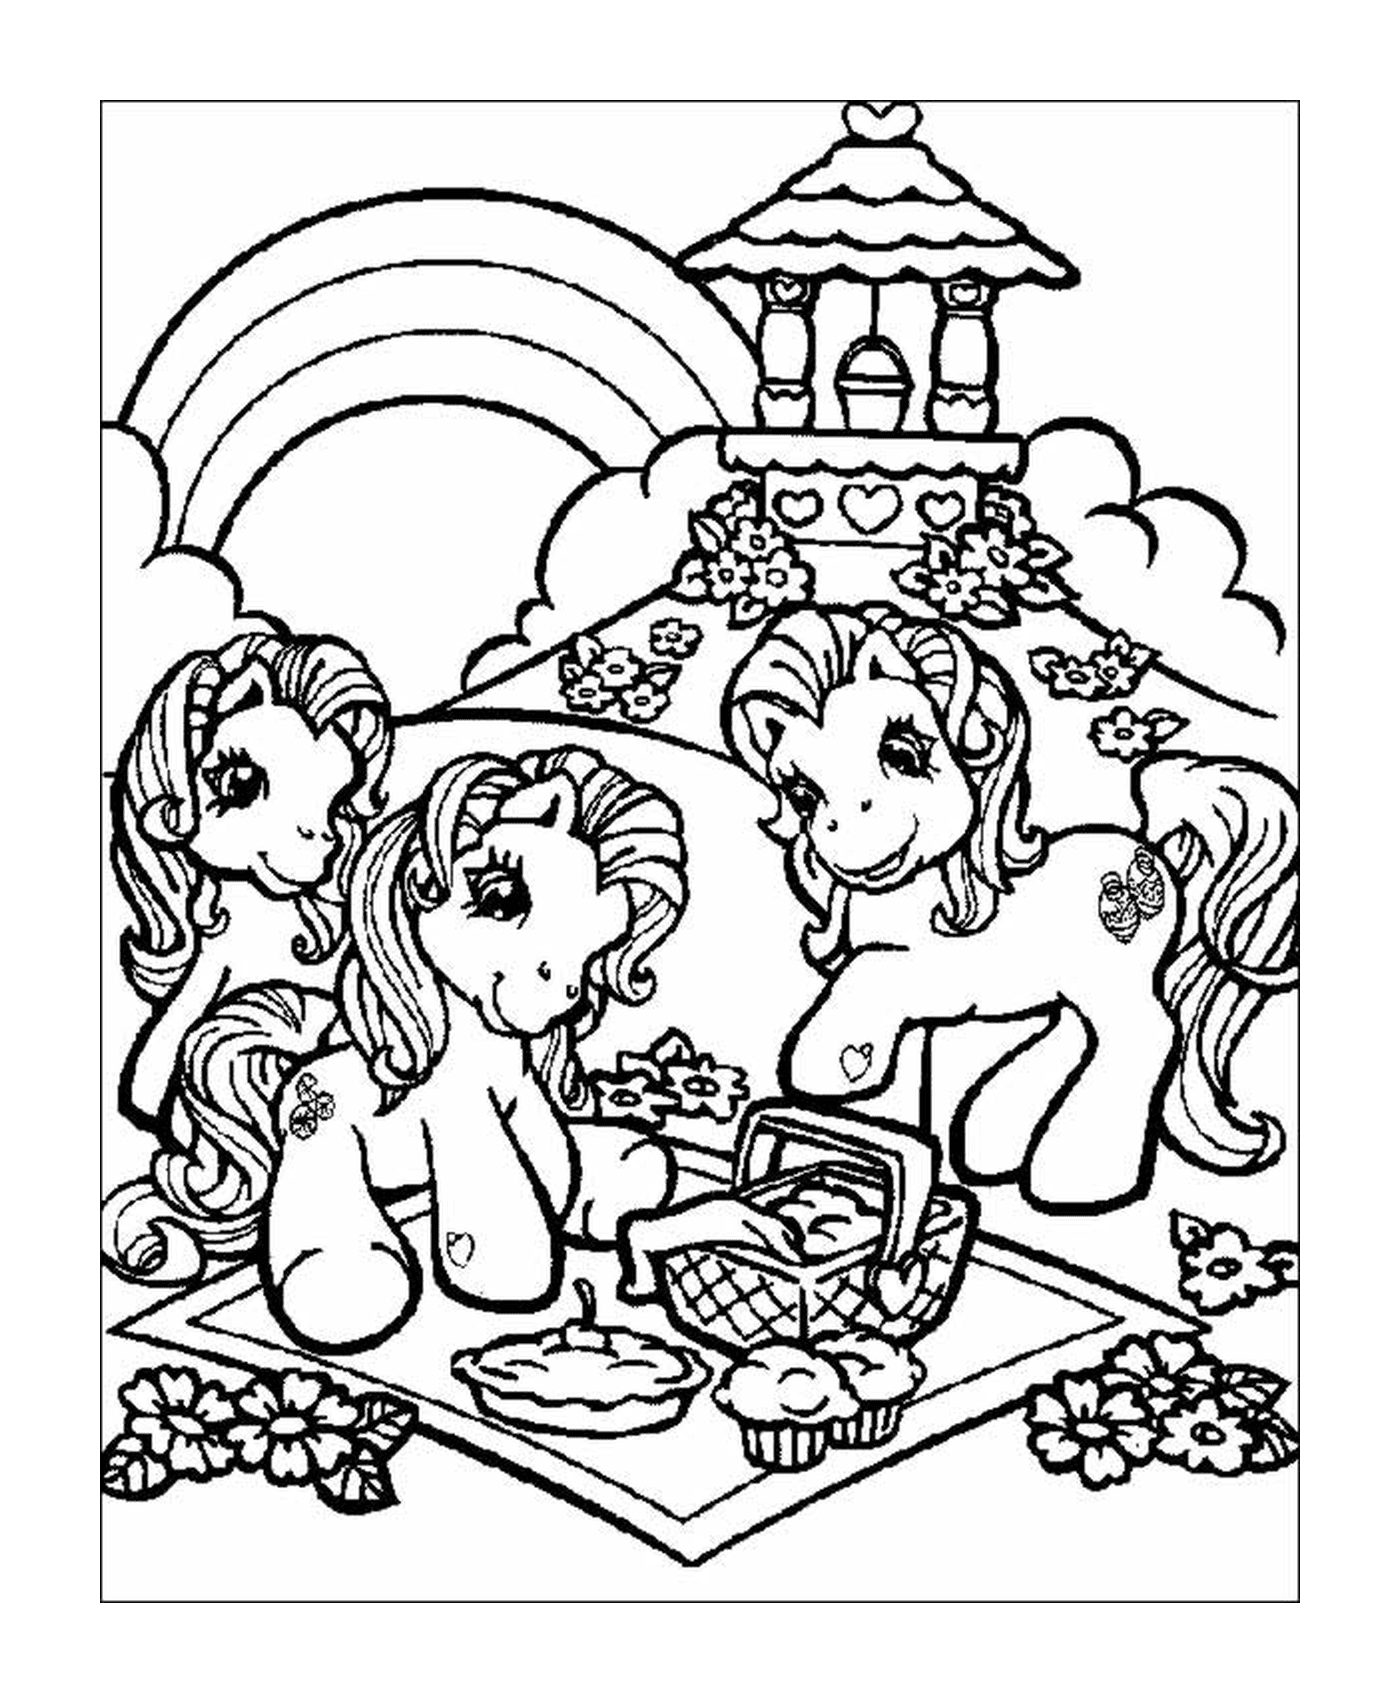  Mi pequeño pony, feliz picnic con amigos 